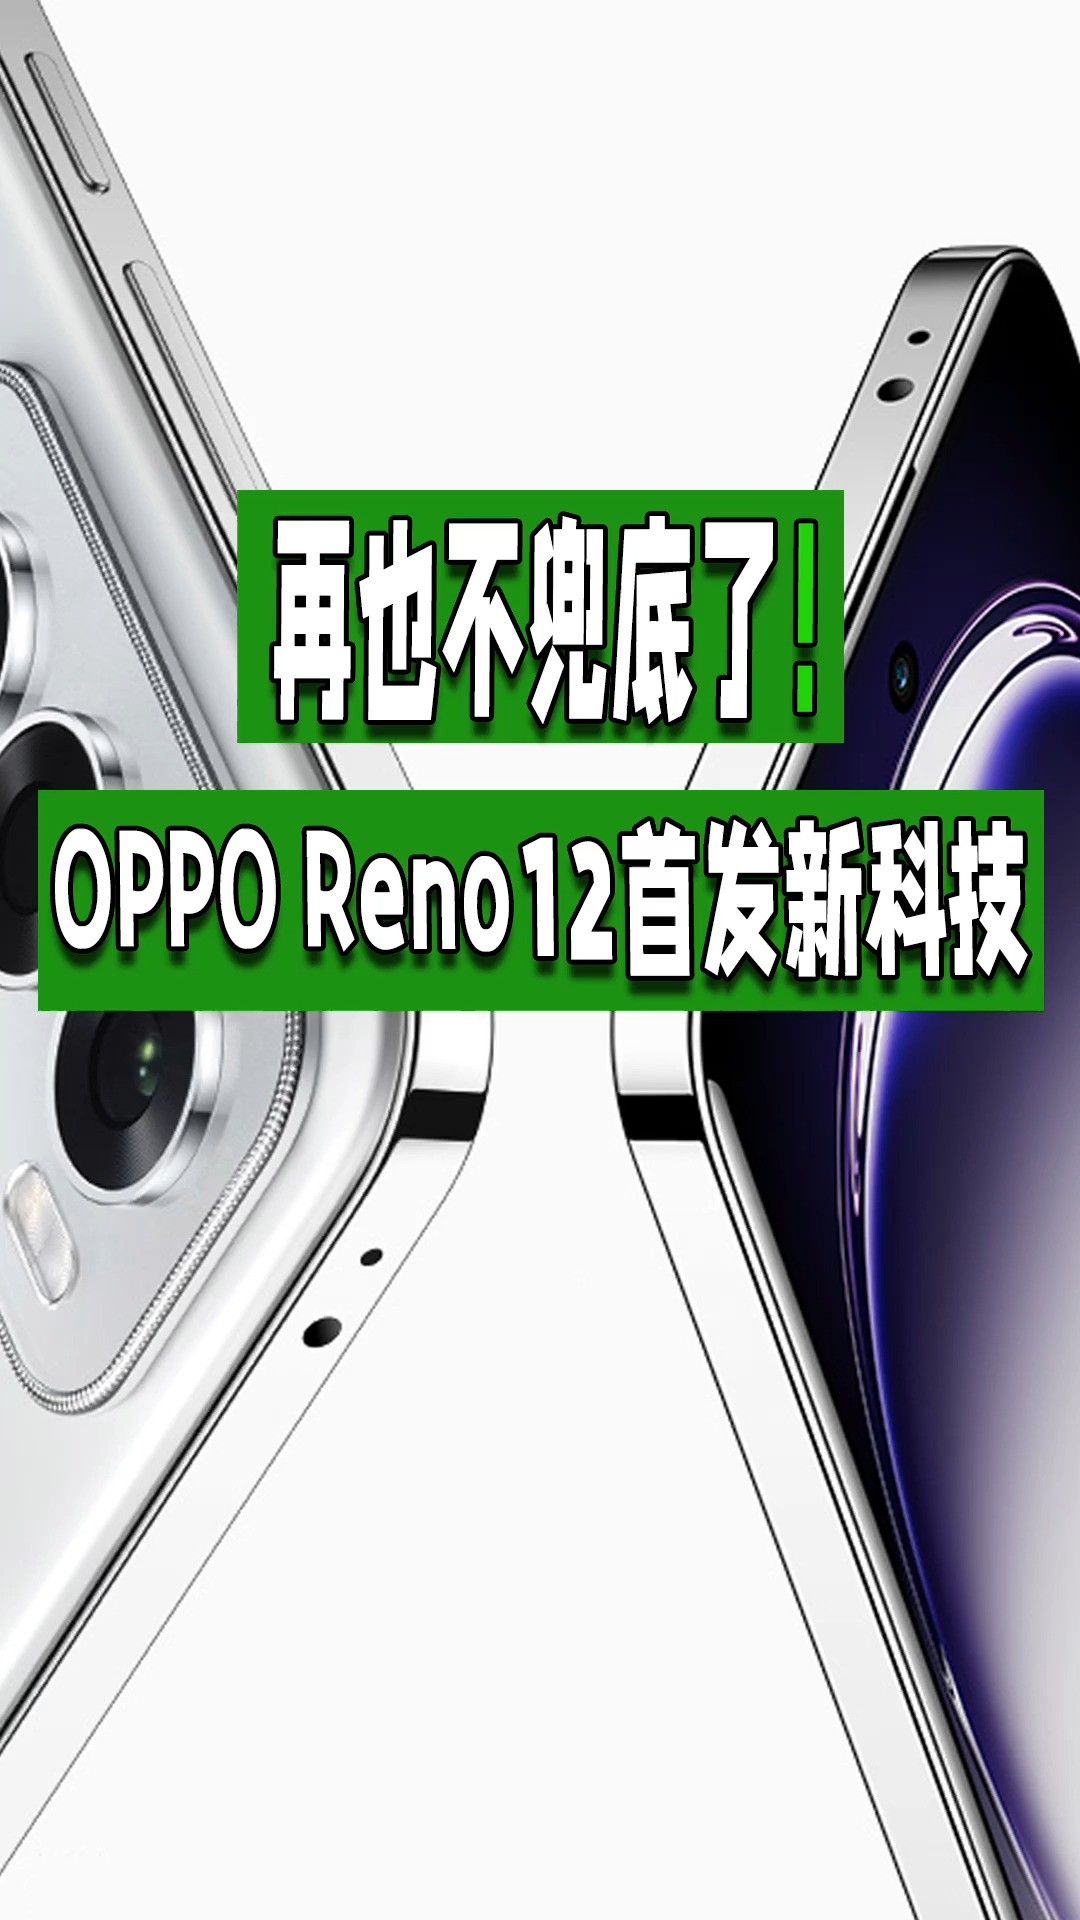 再也不兜底了！OPPO Reno12首发新科技 #opporeno12 